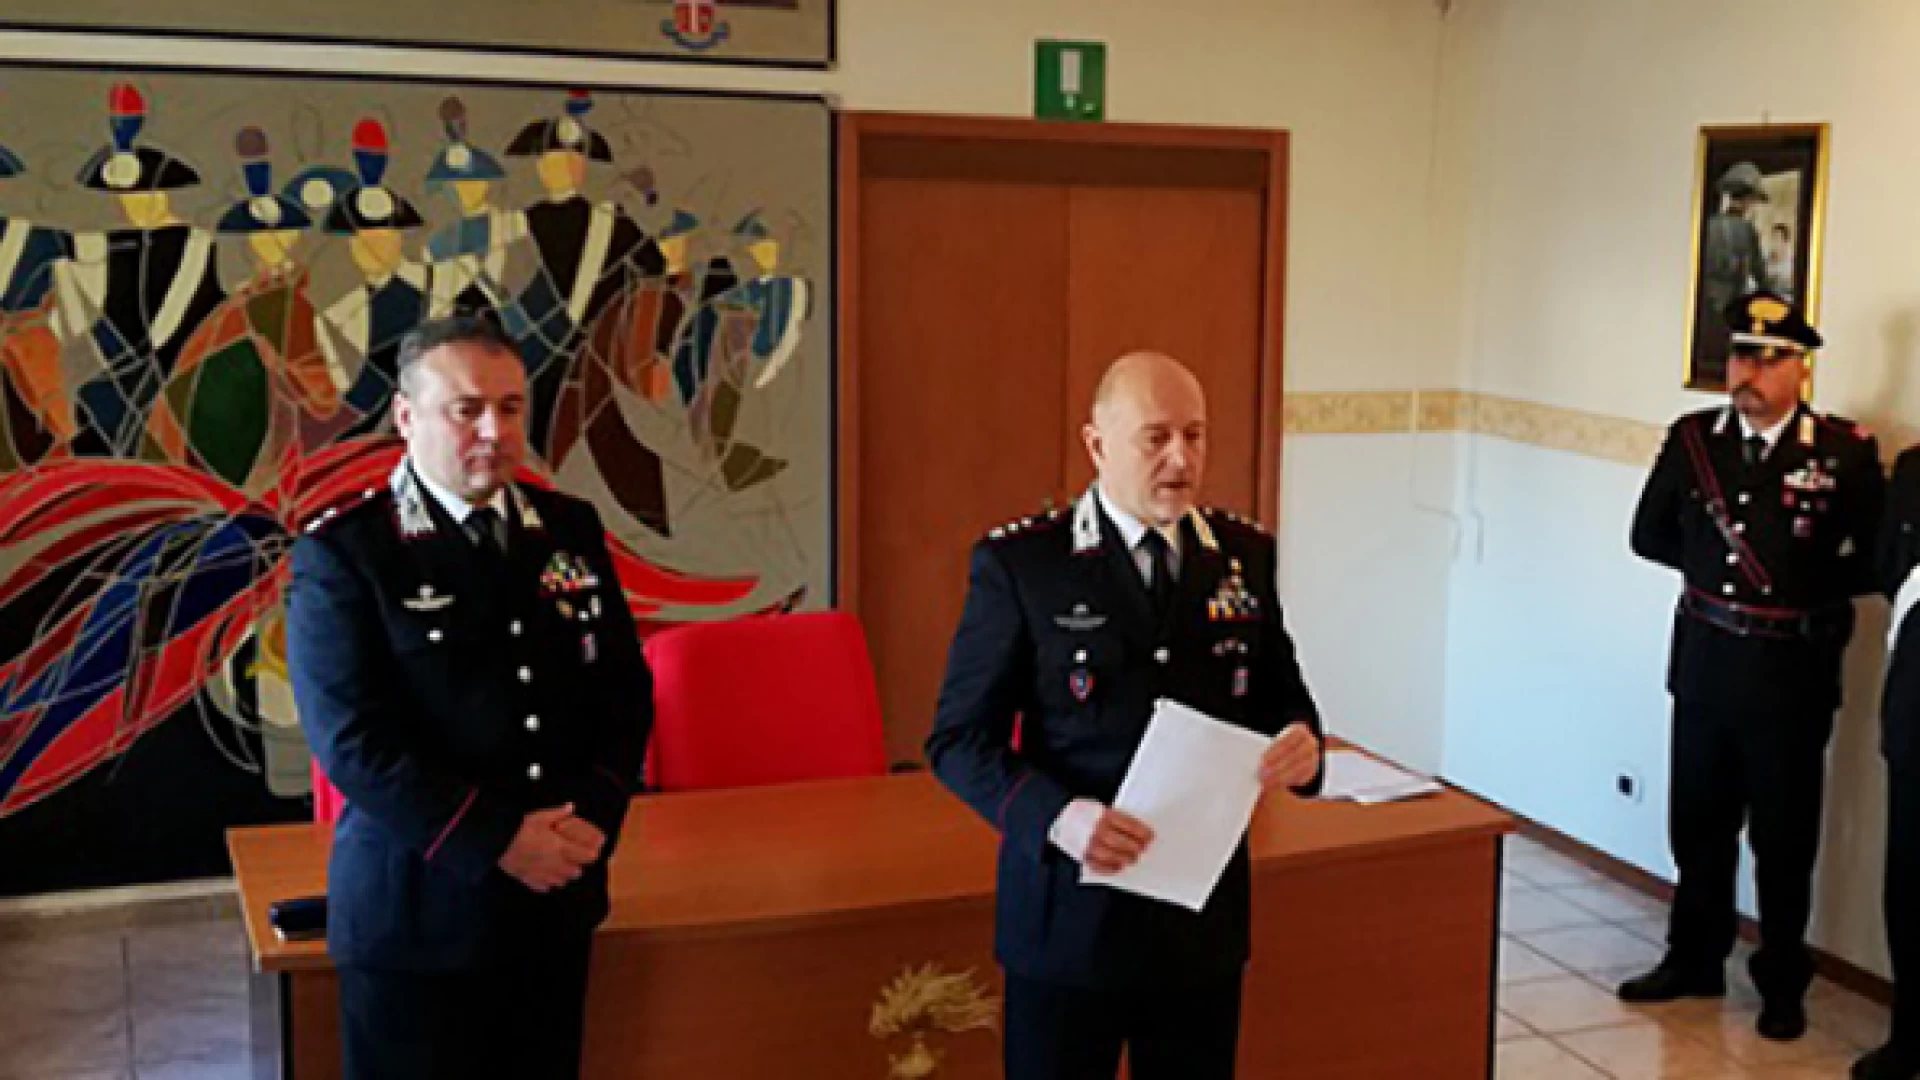 Carabinieri: 62 arresti, oltre 950 persone denunciate per reati vari e centinaia di sequestri. Questo, in cifre, il bilancio dell’attività operativa dei militari dell’Arma nella provincia di Isernia nel 2017.